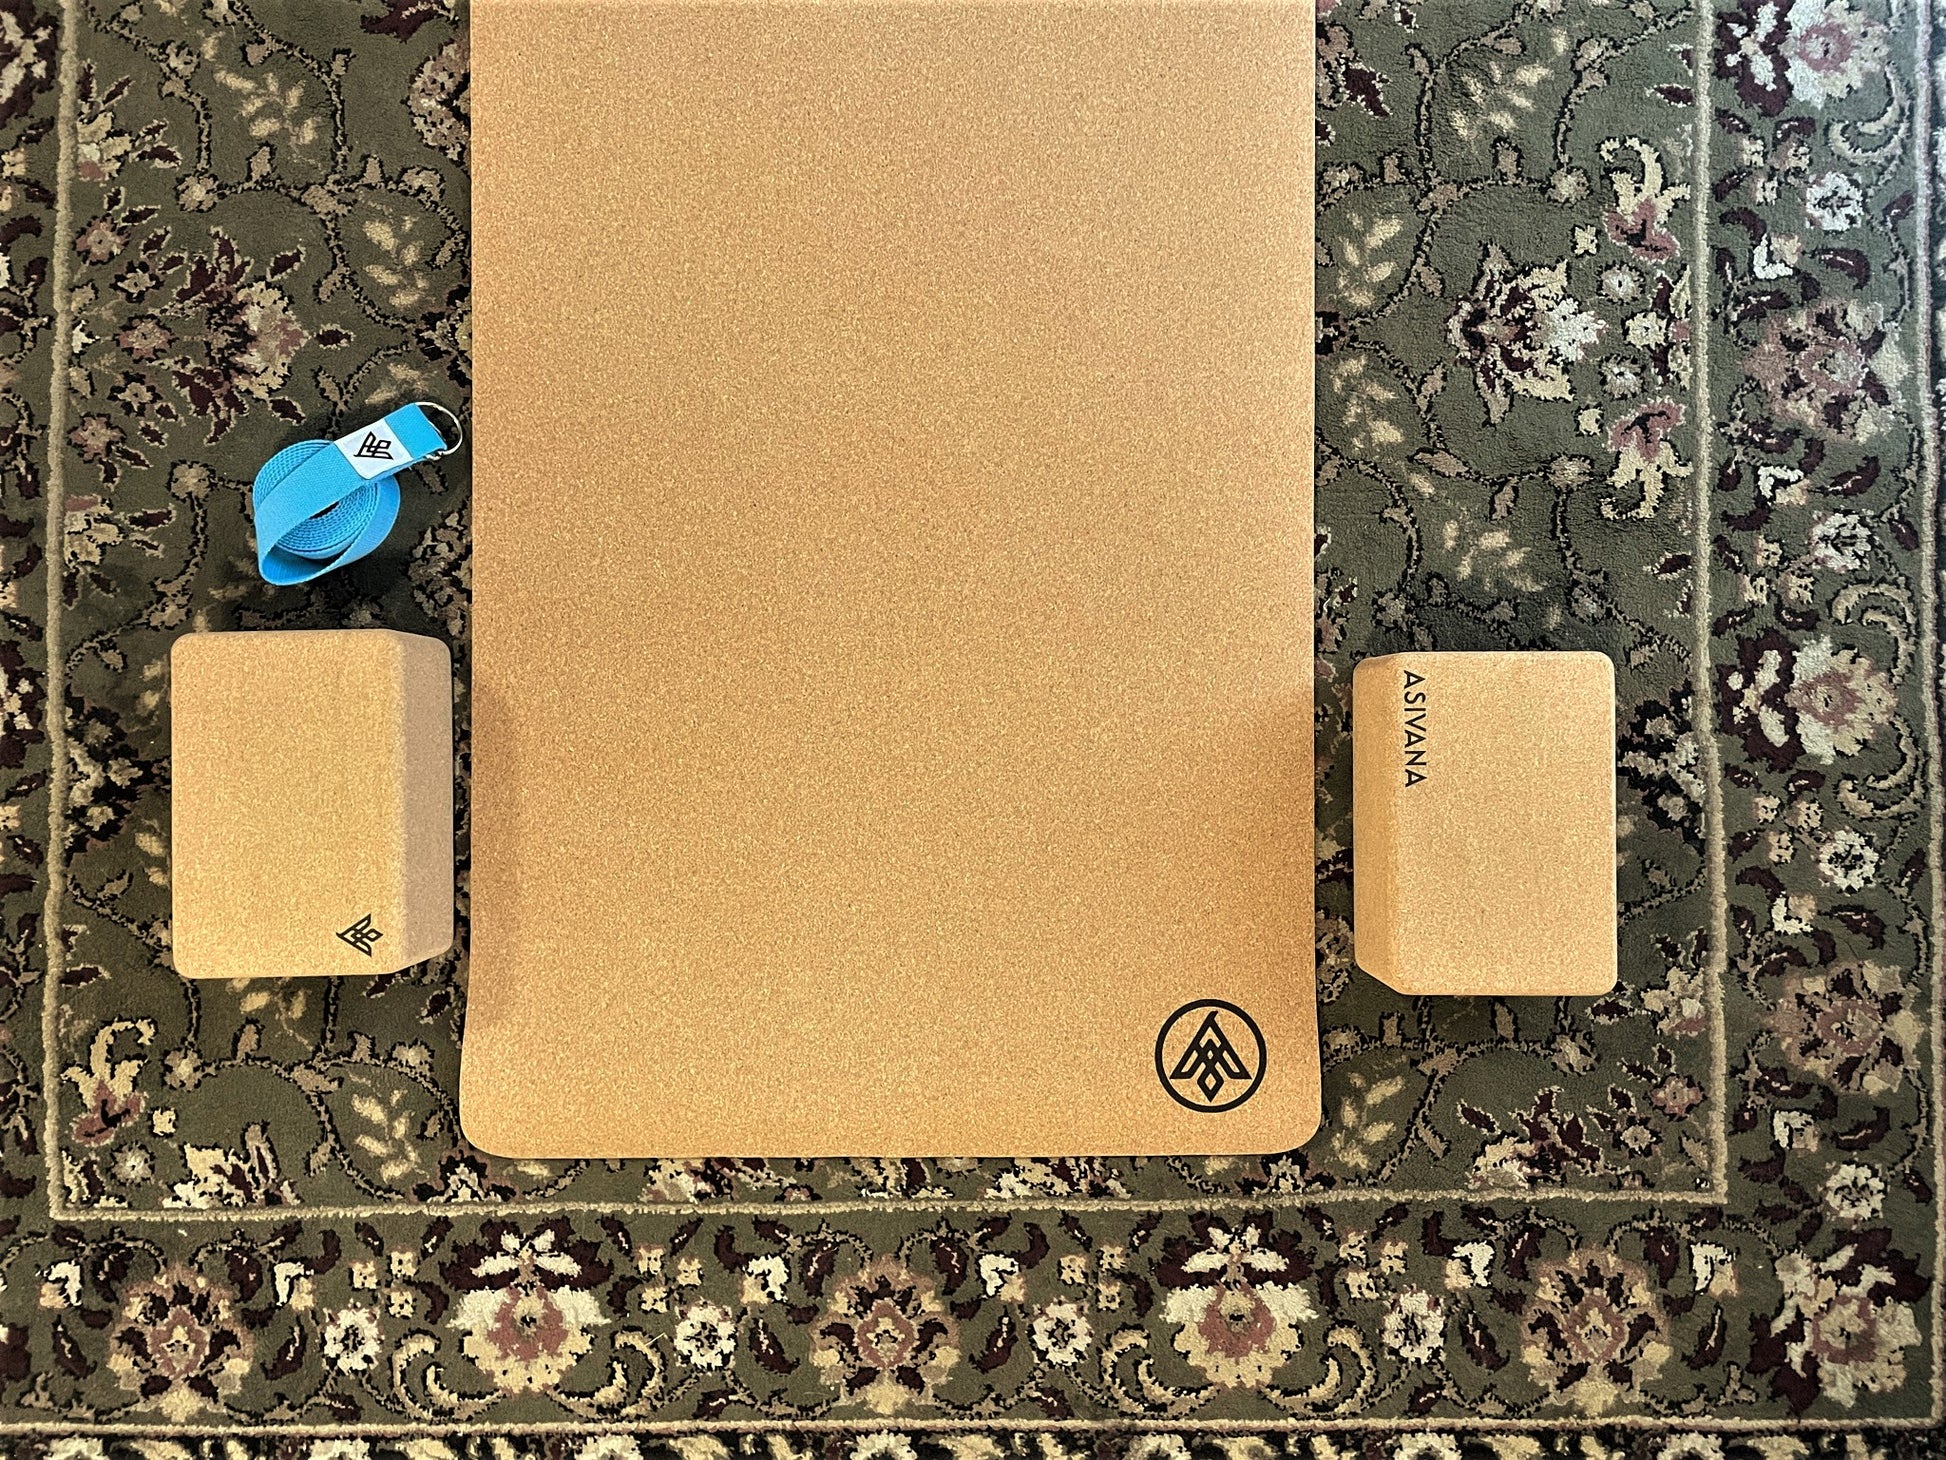 Spri Yoga Starter Kit for Beginners with Sticky Mat, yoga block, 6' strap  poster